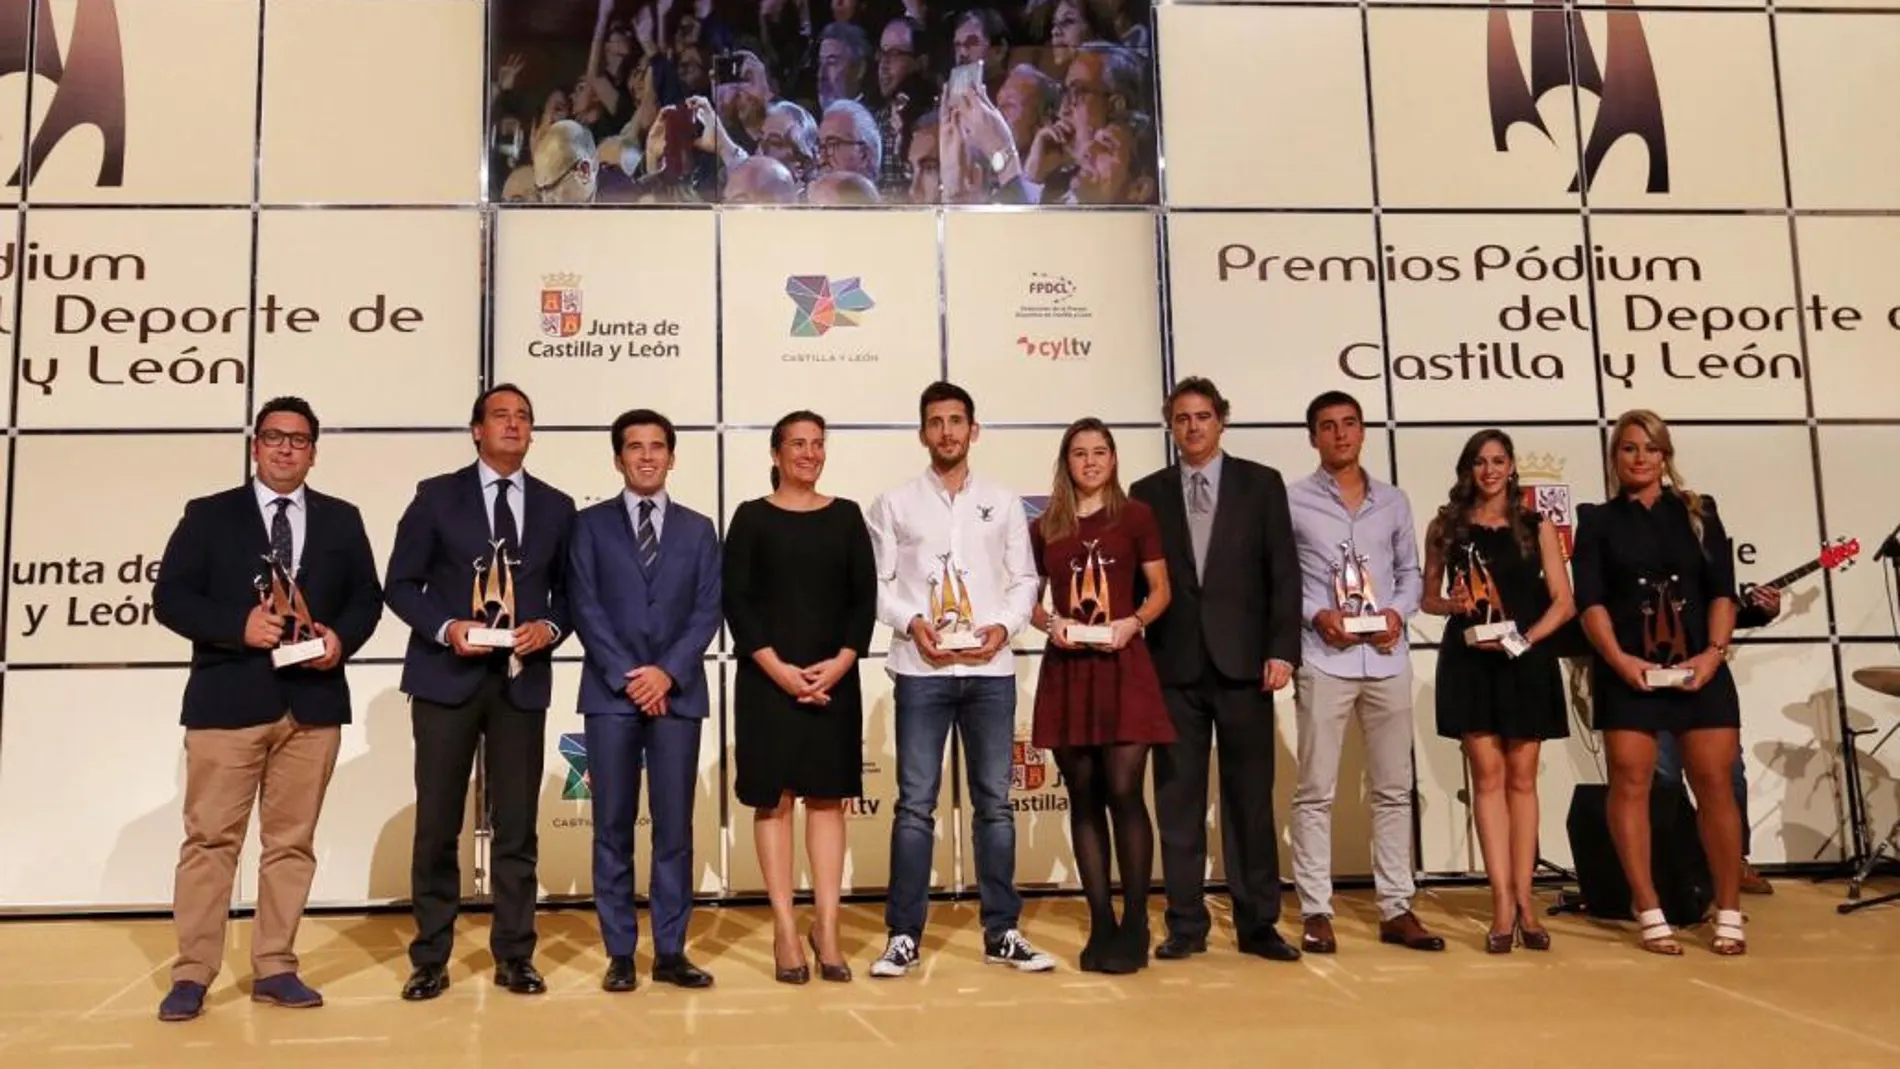 La consejera de Cultura y Turismo, María Josefa García Cirac, junto a todos los galardonados en los Premios Pódium del Deporte de Castilla y León 2016